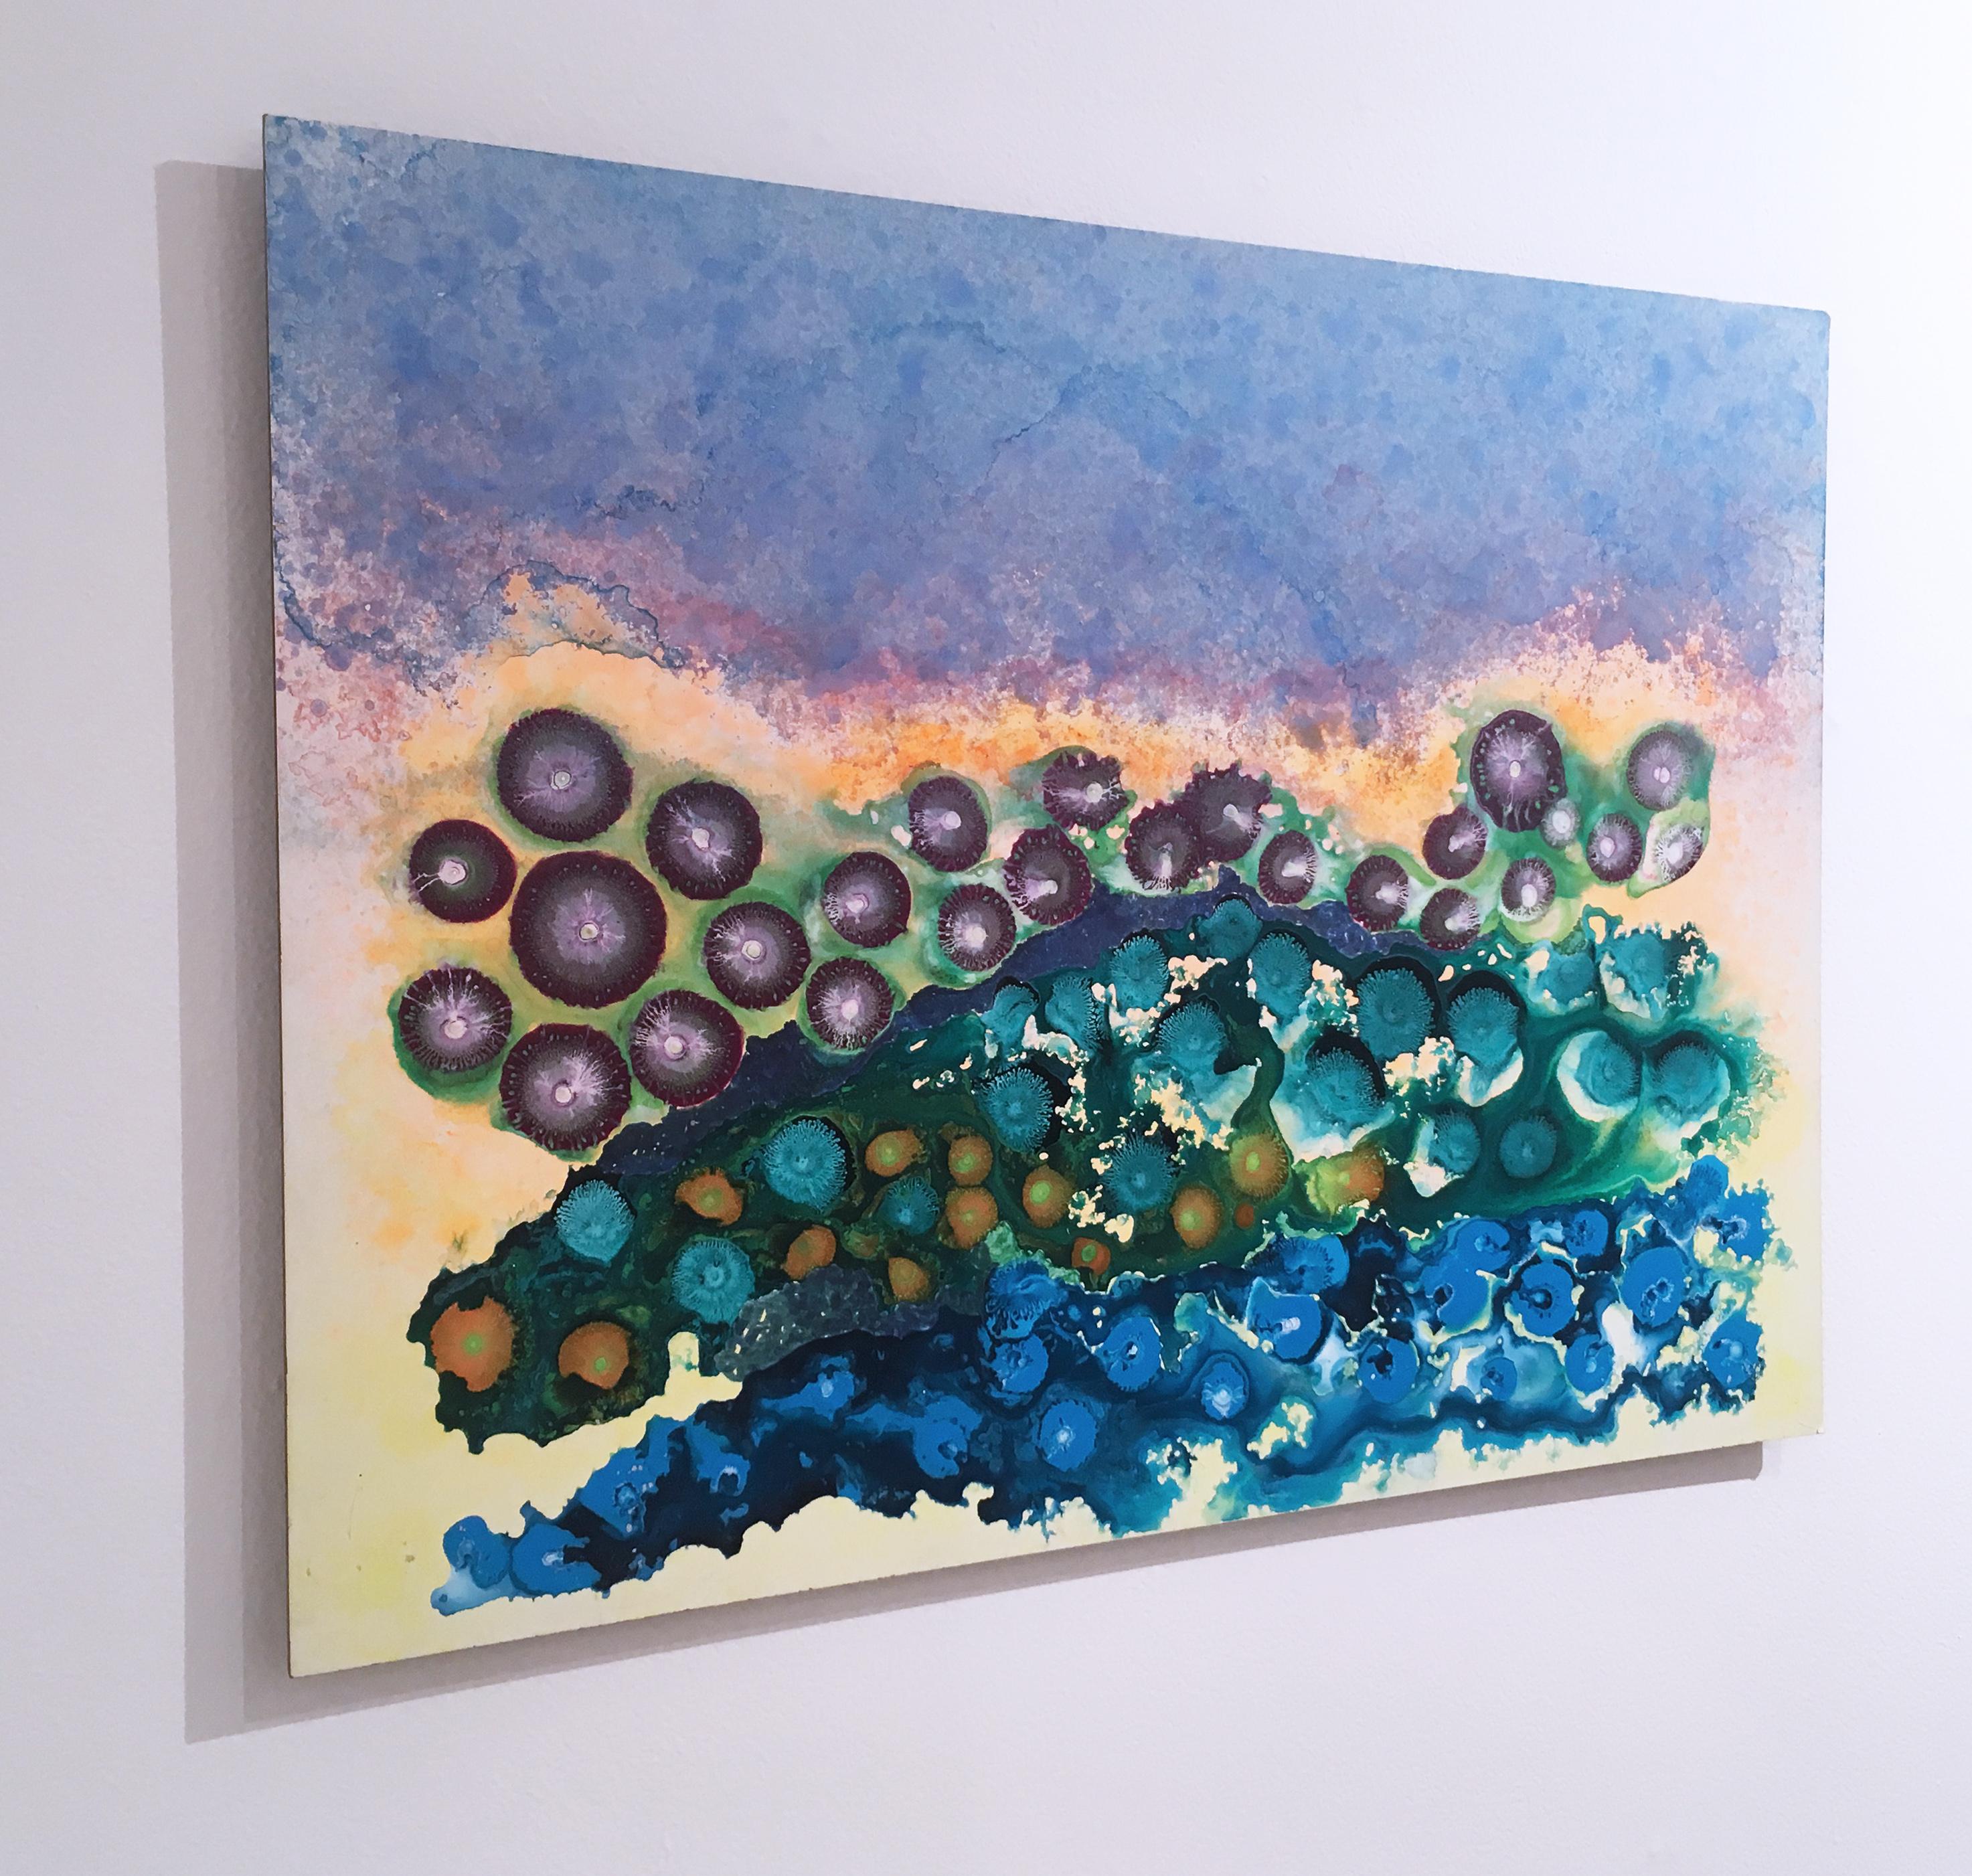 Smiling Croc, 2018, figurativ, abstrakt, floral, grün, gelb, orange, blau – Painting von Orlando Reyes